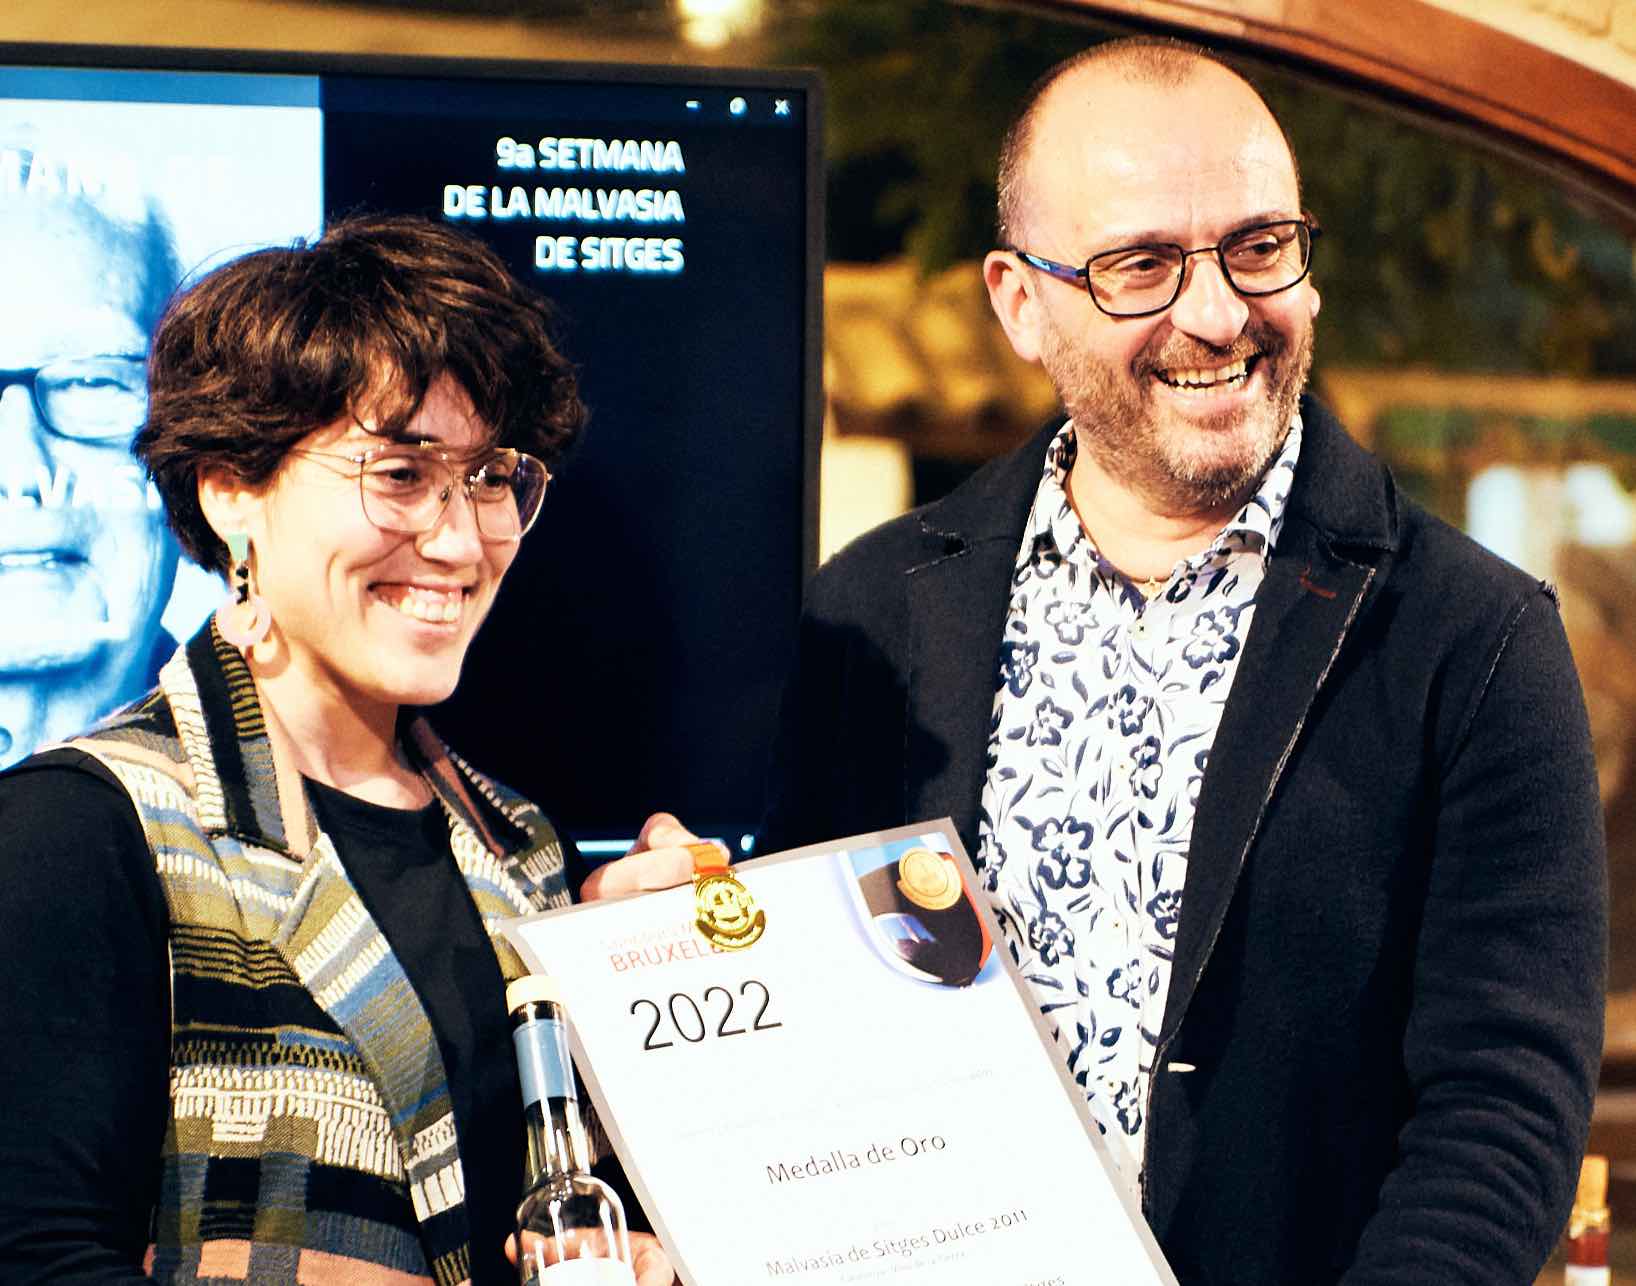 Gran cata de vinos dulces premiados en el CMB 2023 en el marco de la Semana de la Malvasía en Sitges (Barcelona):  “Aròmes de Victòria : els Ors del CMB2023”